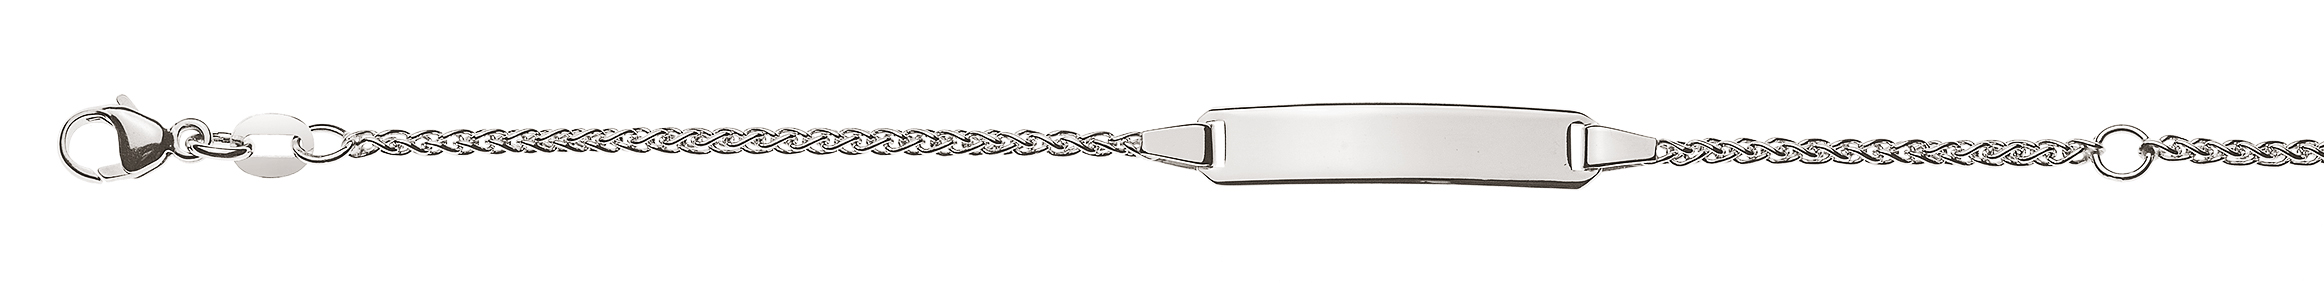 AURONOS Élégance ID-Bracelet 14k white gold plait chain 14cm